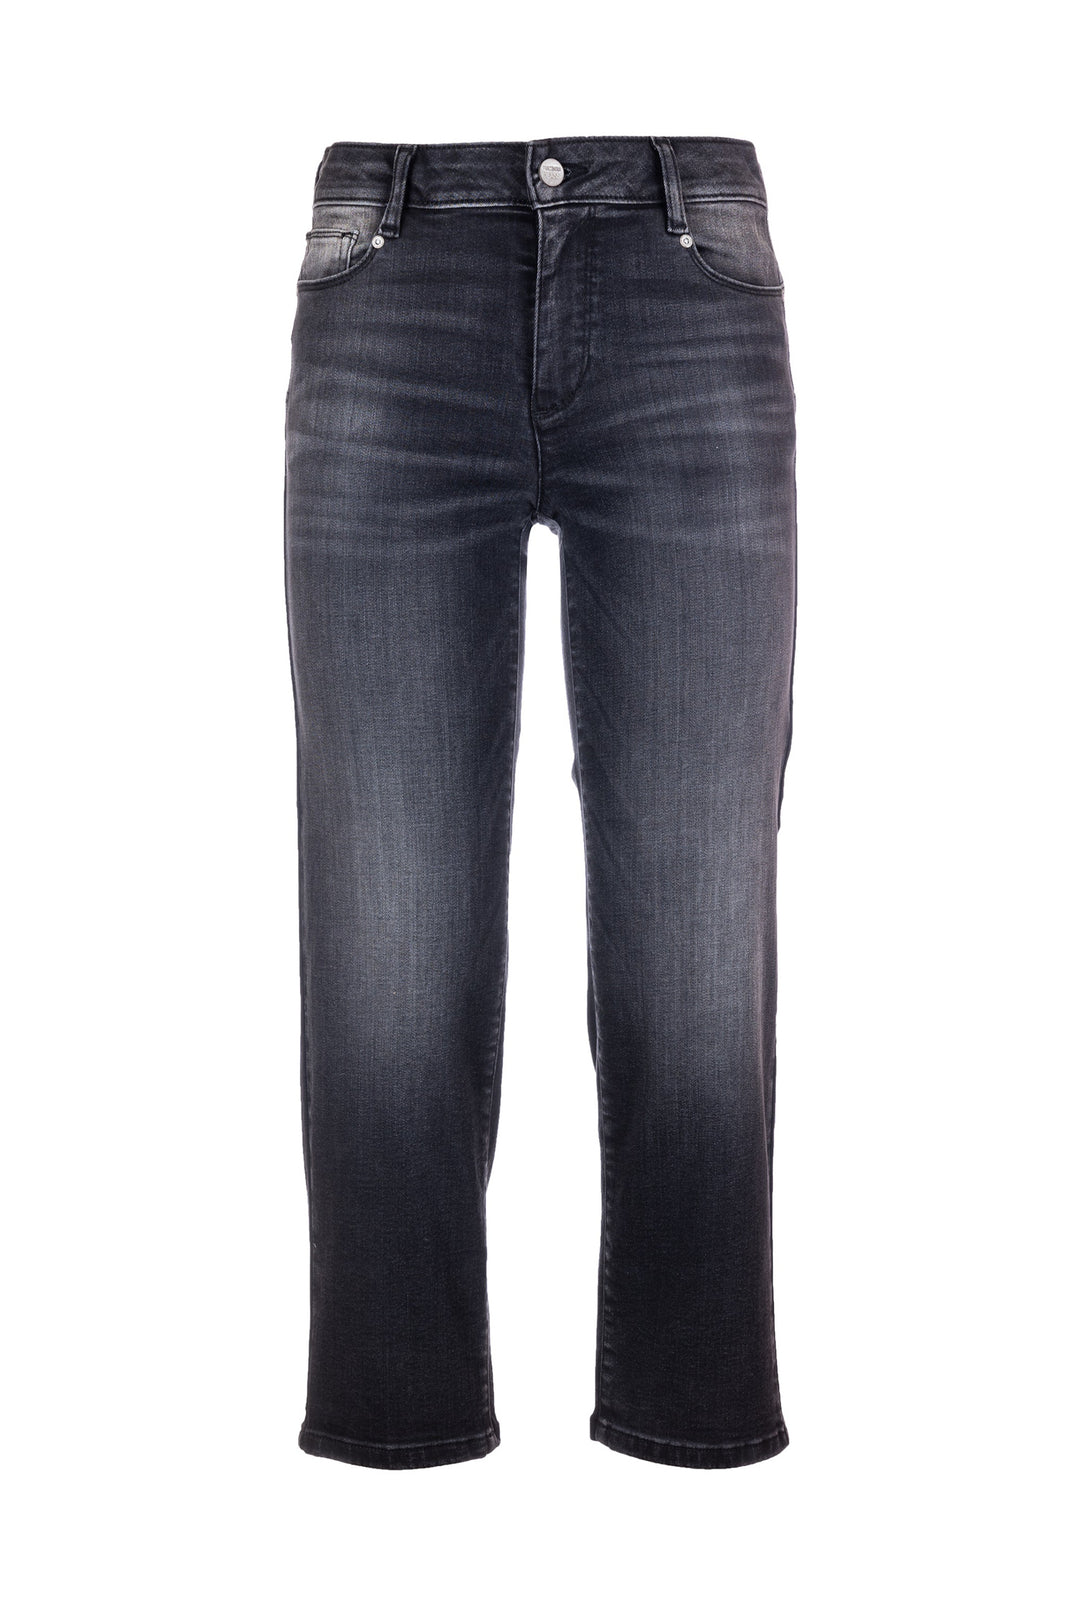 FRACOMINA Jeans cropped effetto push up in denim nero con lavaggio medio - Mancinelli 1954